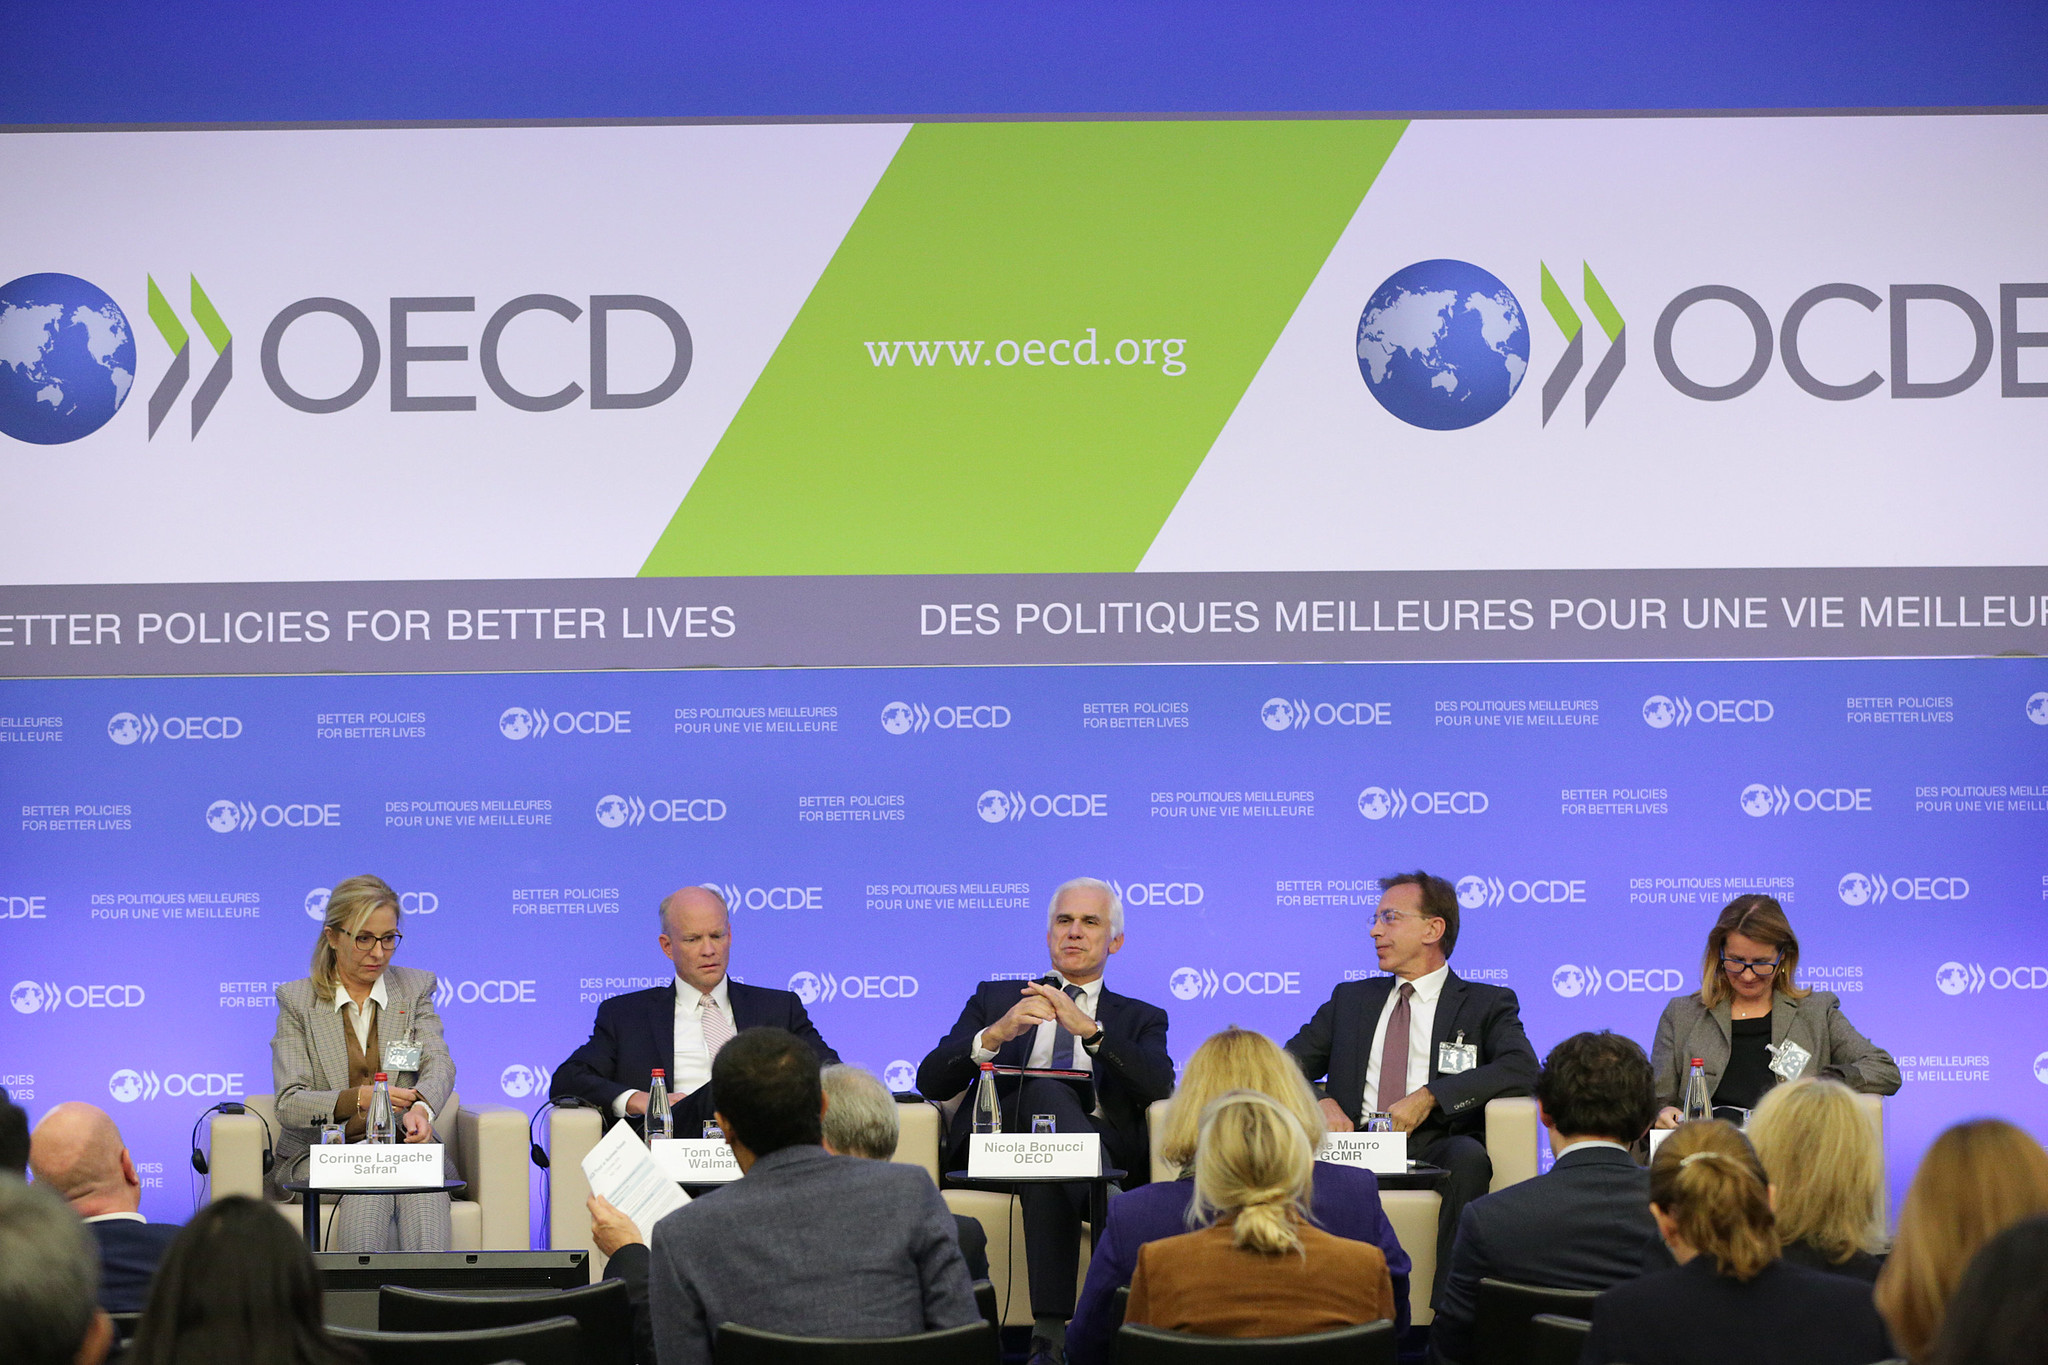 OECD Trust in Business Forum 2019